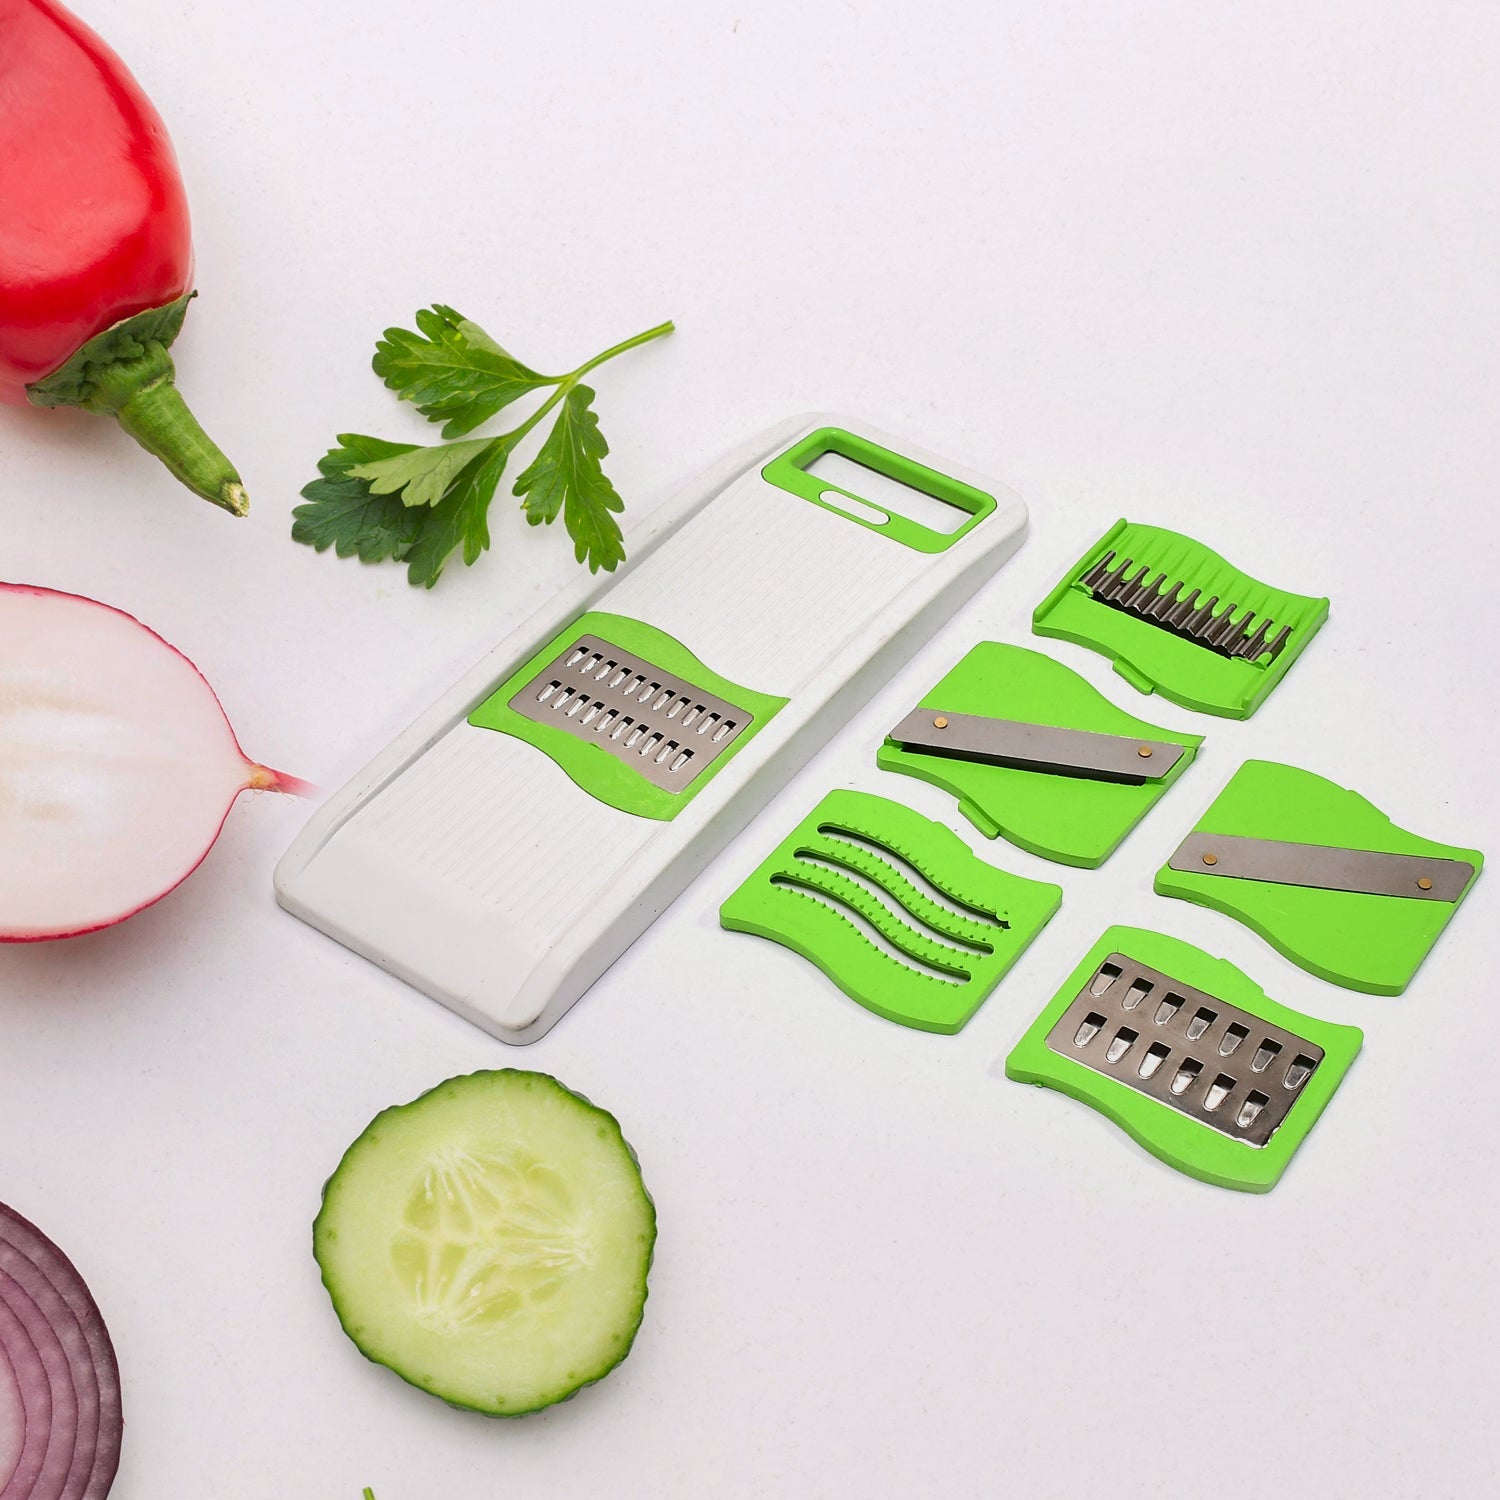 5214 6in1 Vegetable Slicer & Fruit Slicer Maker Multi Purpose Use DeoDap